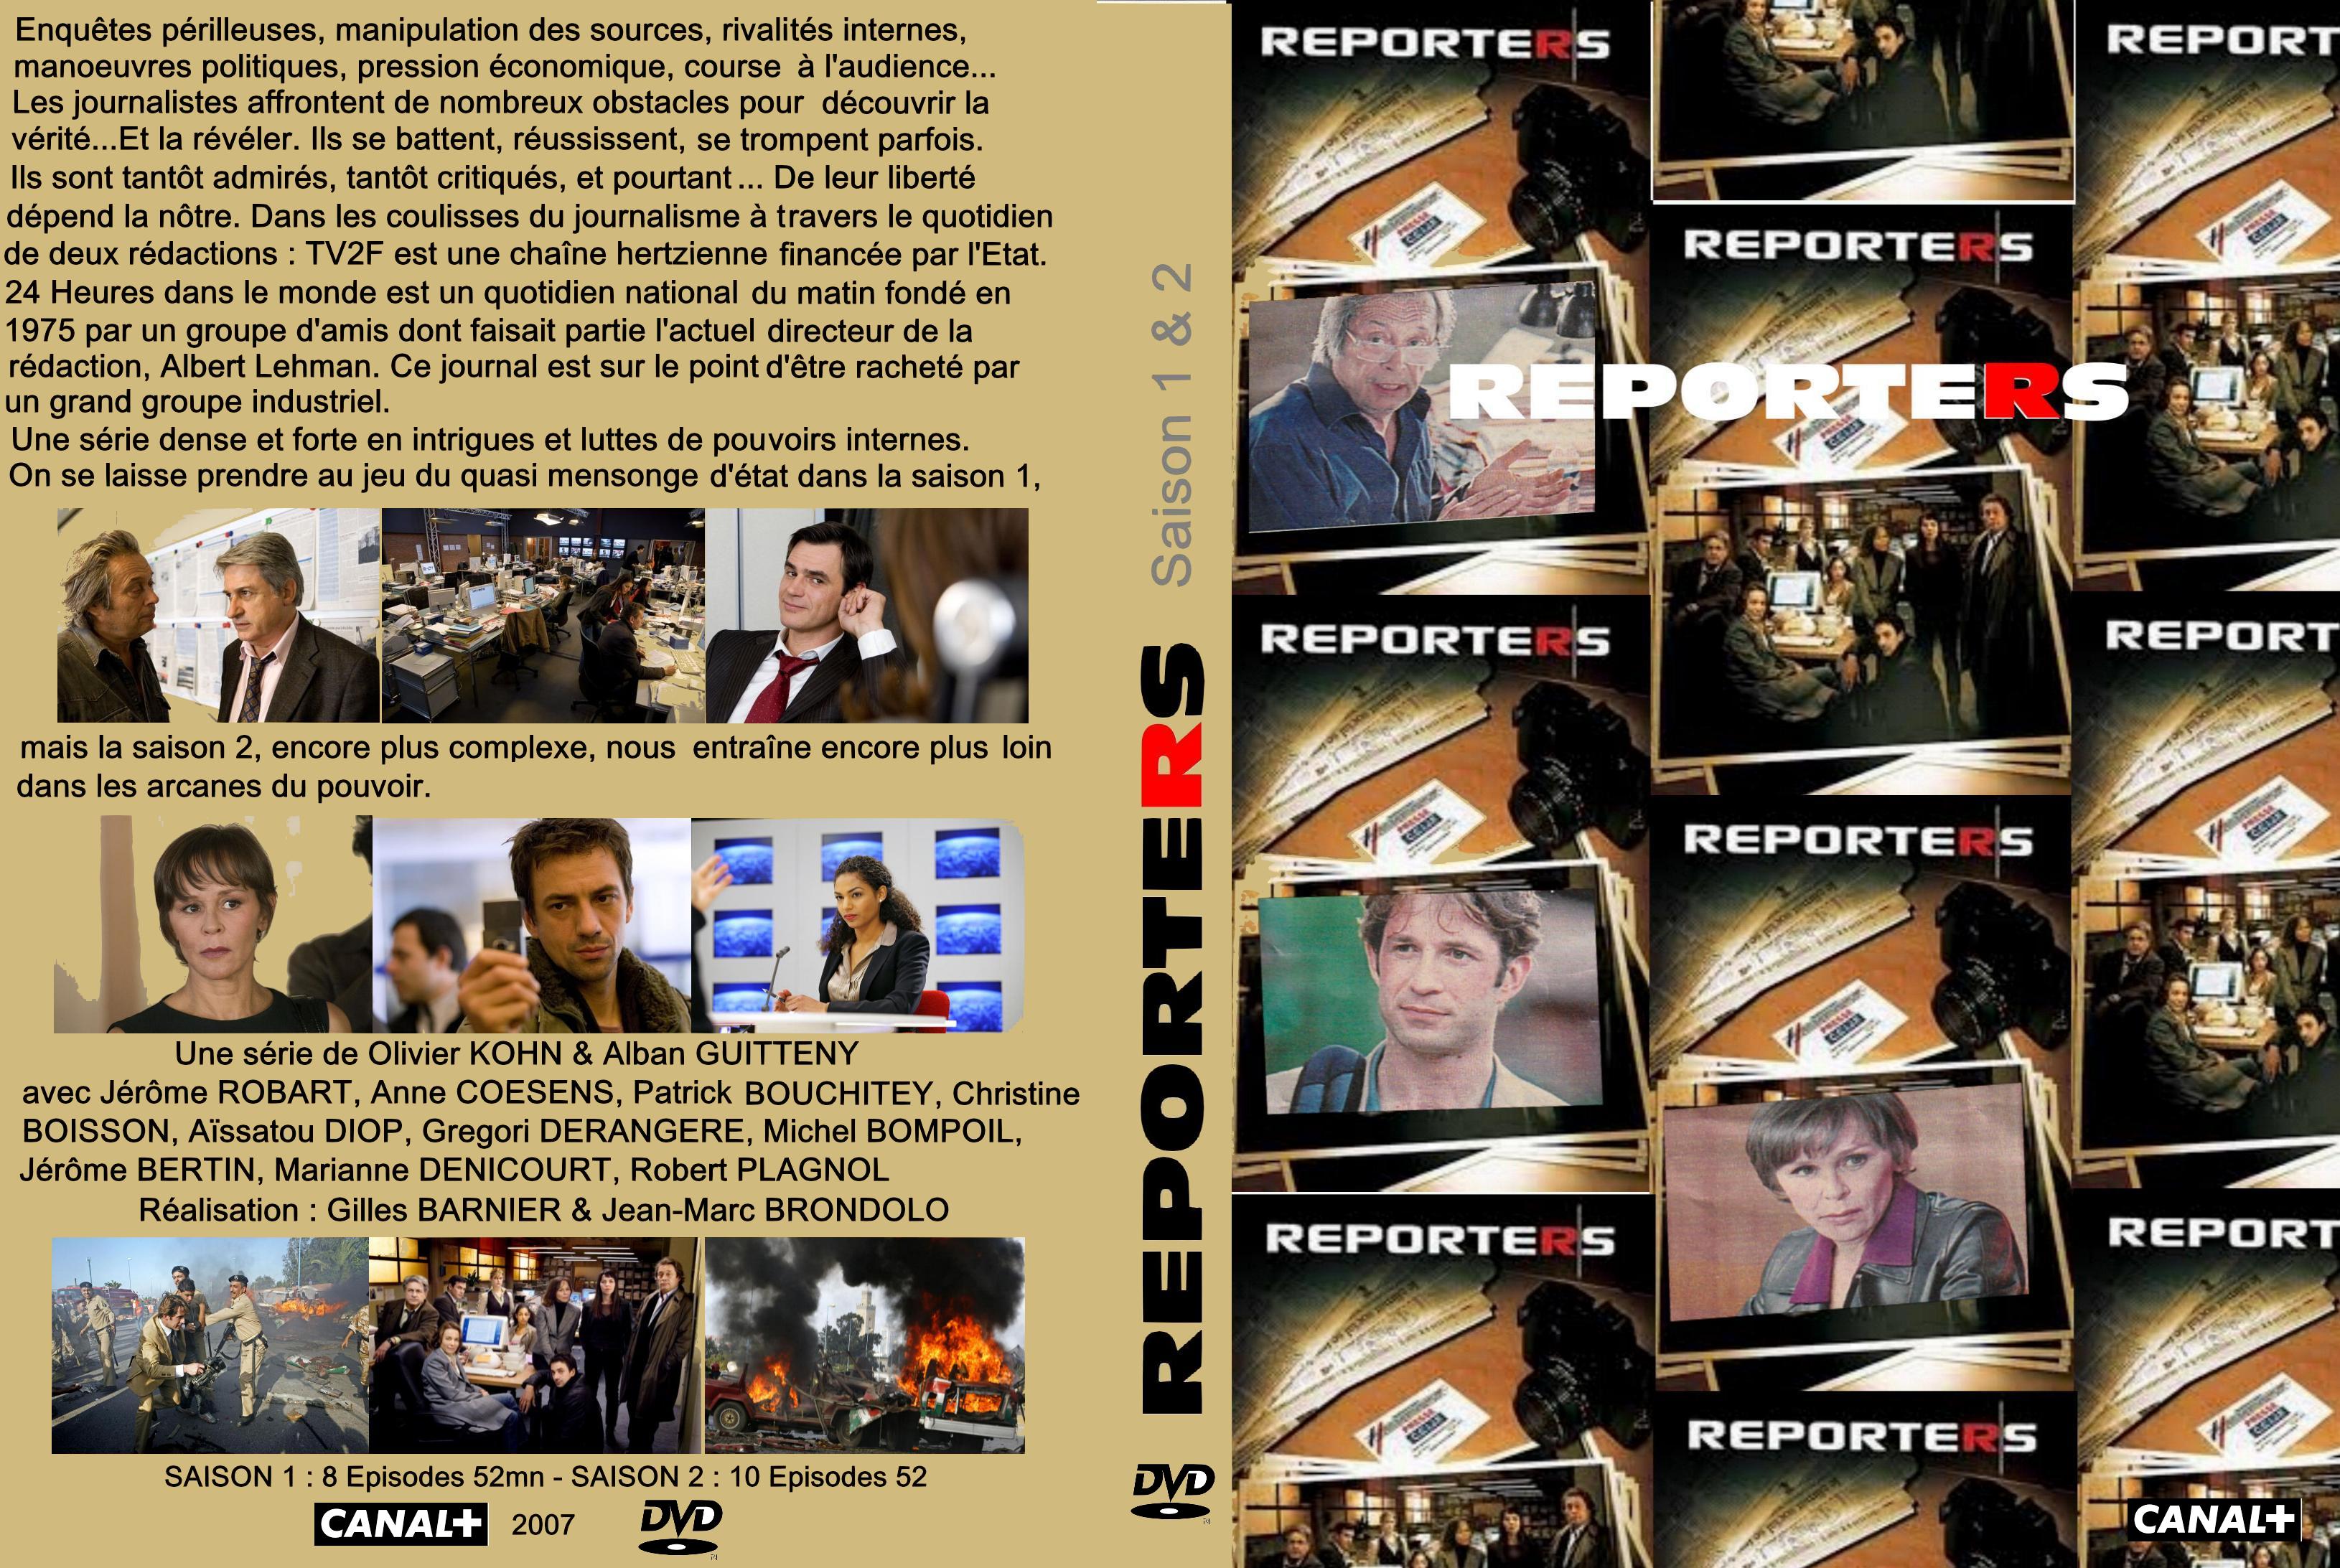 Jaquette DVD Reporters Saison 1 et 2 custom